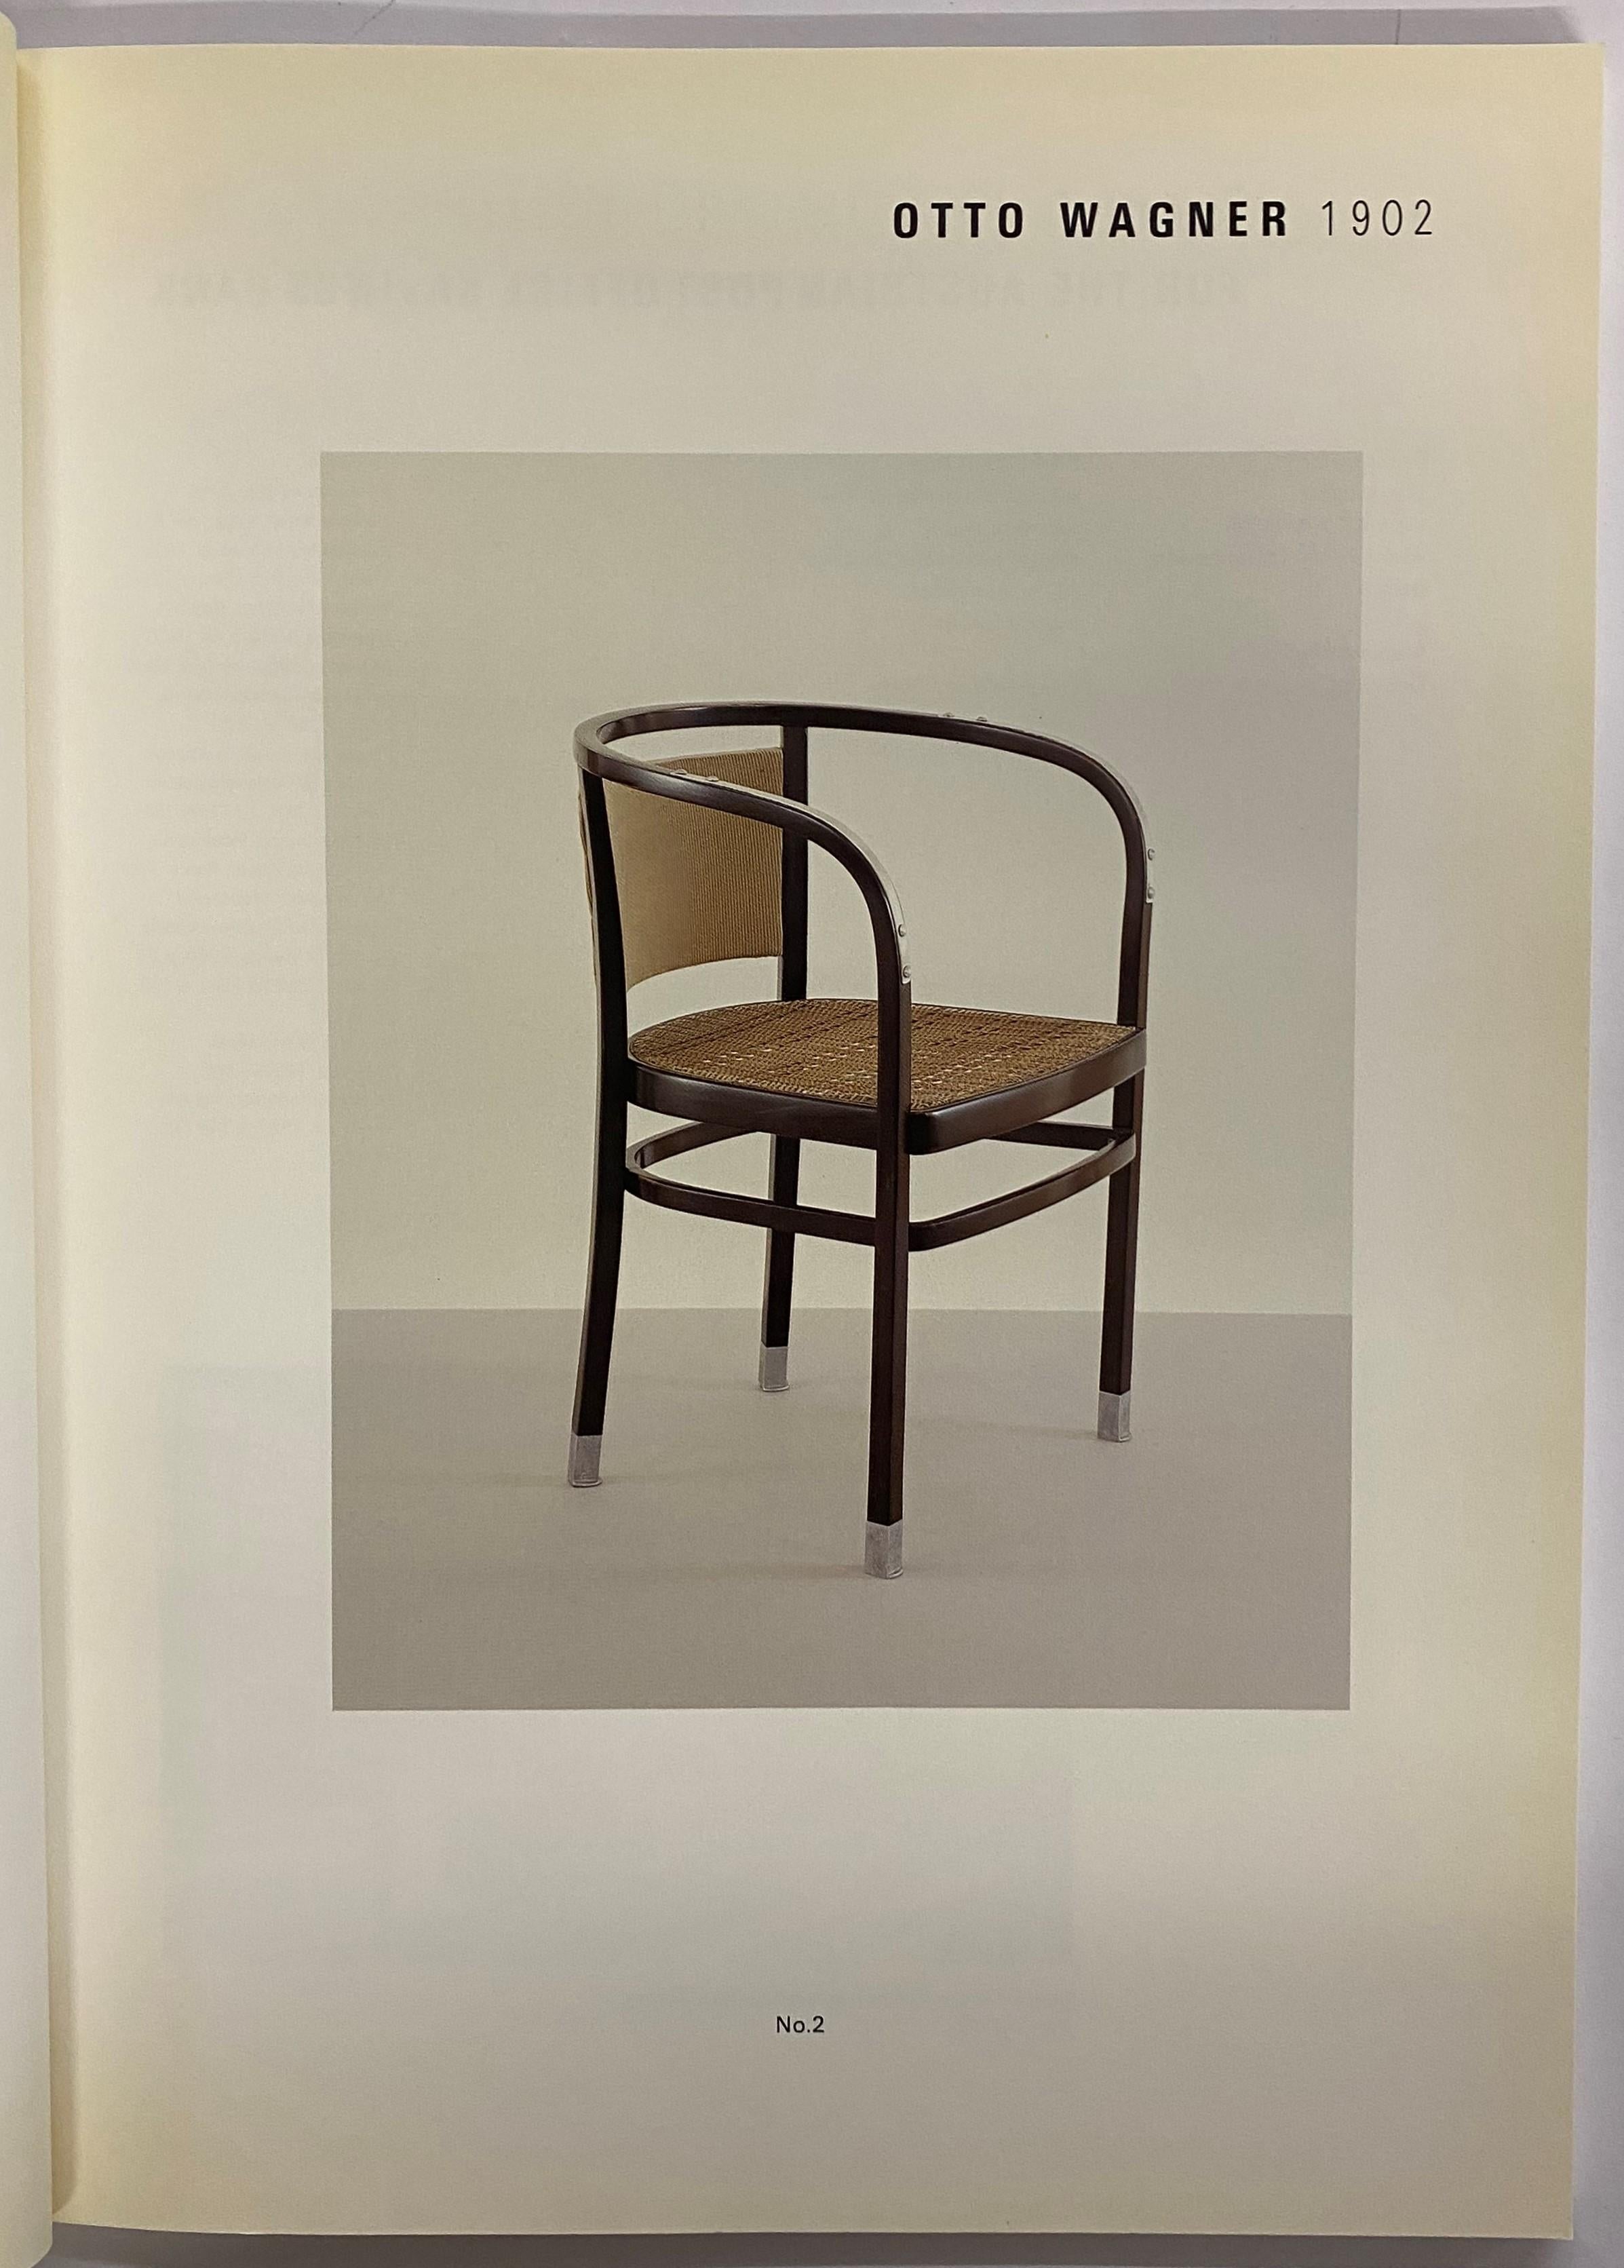 Dieser Katalog mit weichem Einband wurde für eine Ausstellung bei Fischer Fine Art, London, produziert, die die Entwicklung des Designs moderner Möbel von den frühen Jahren des 20. Jahrhunderts bis in die 1960er Jahre zeigen sollte. Jedes der 34